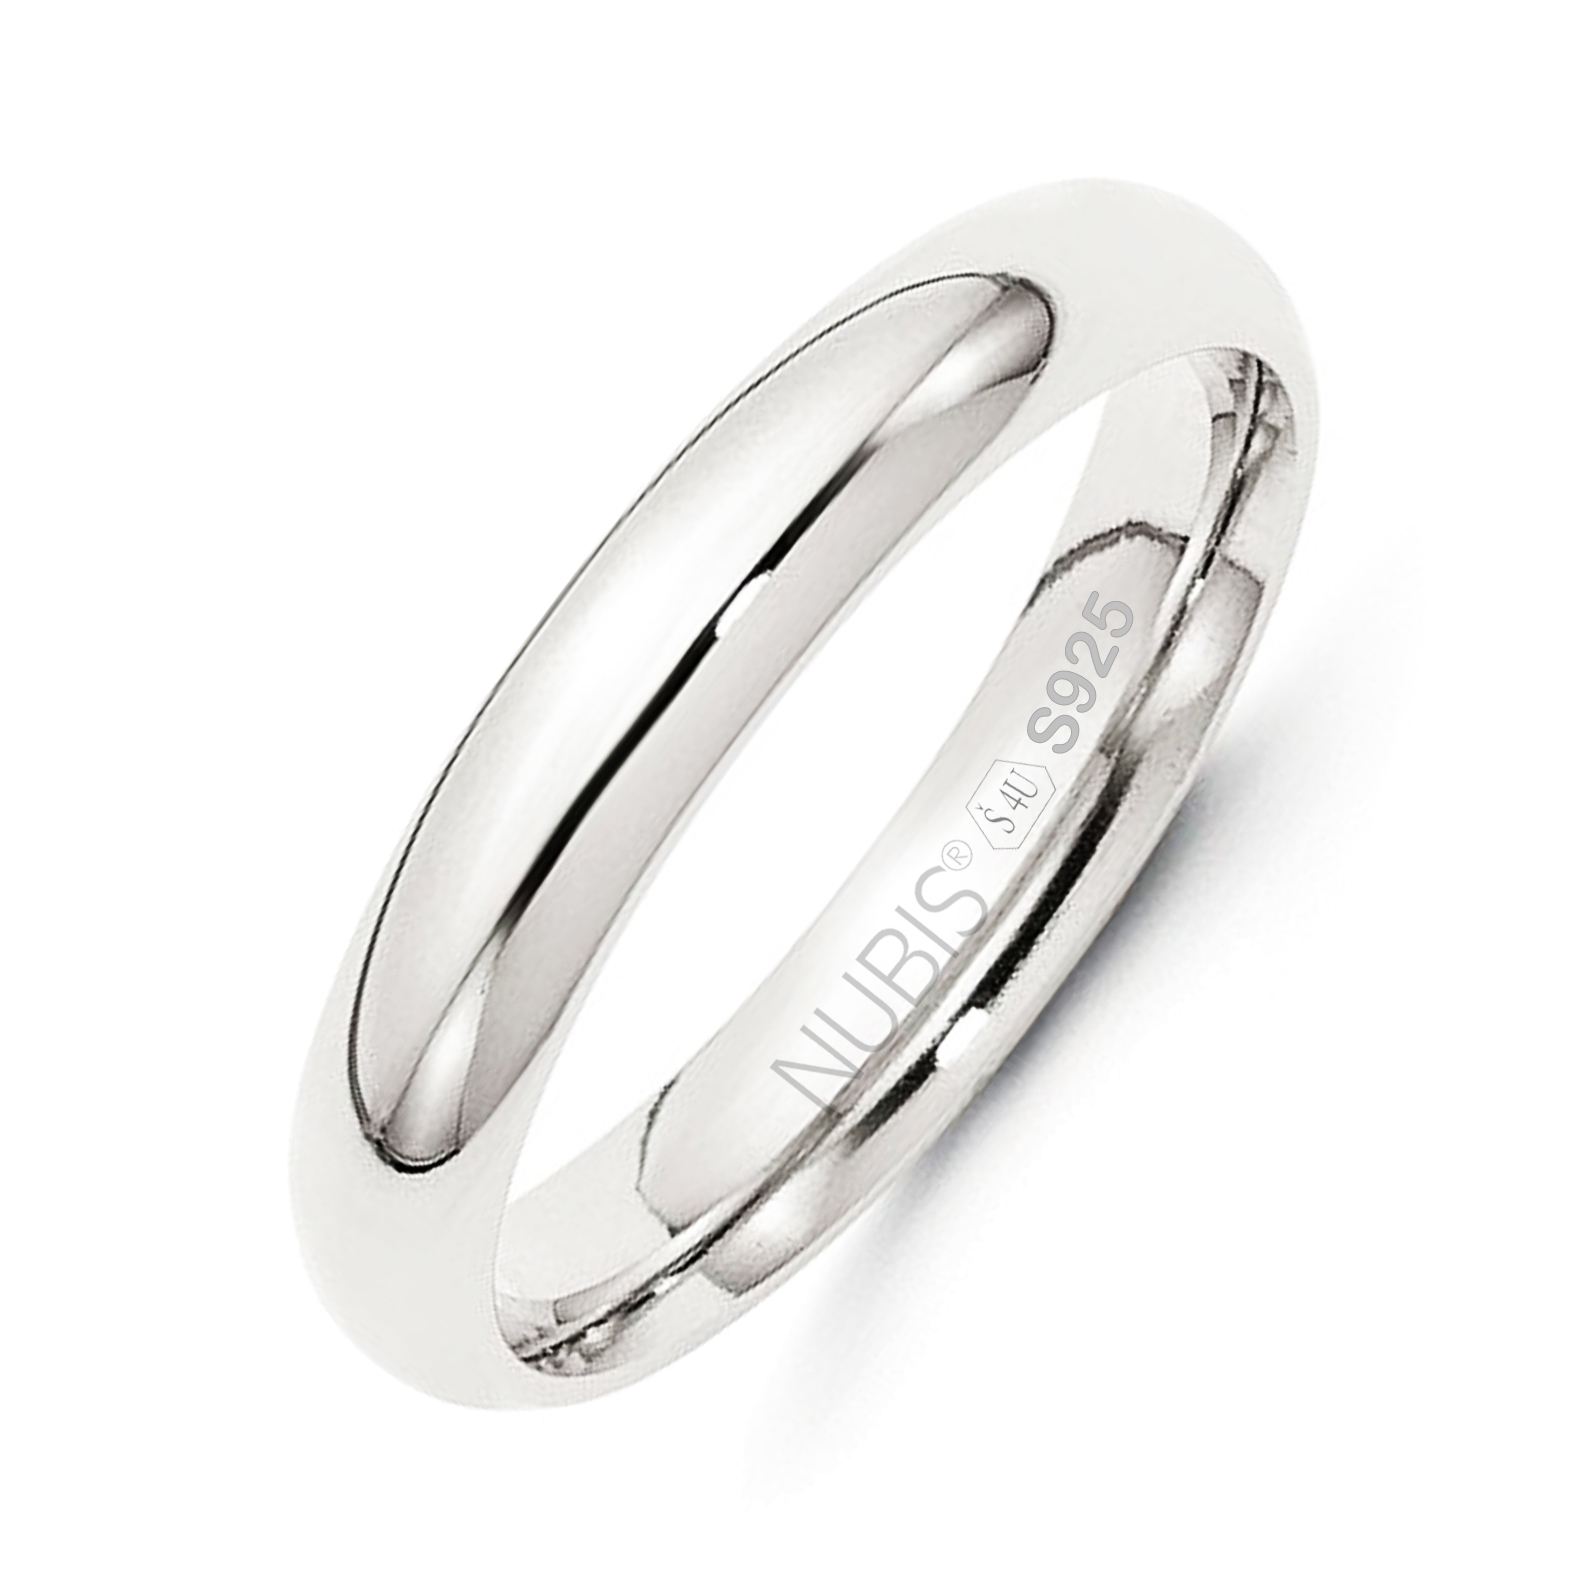 NUBIS® NB101-4 Stříbrný snubní prsten šíře 4 mm - velikost 56 - NB101-4-56